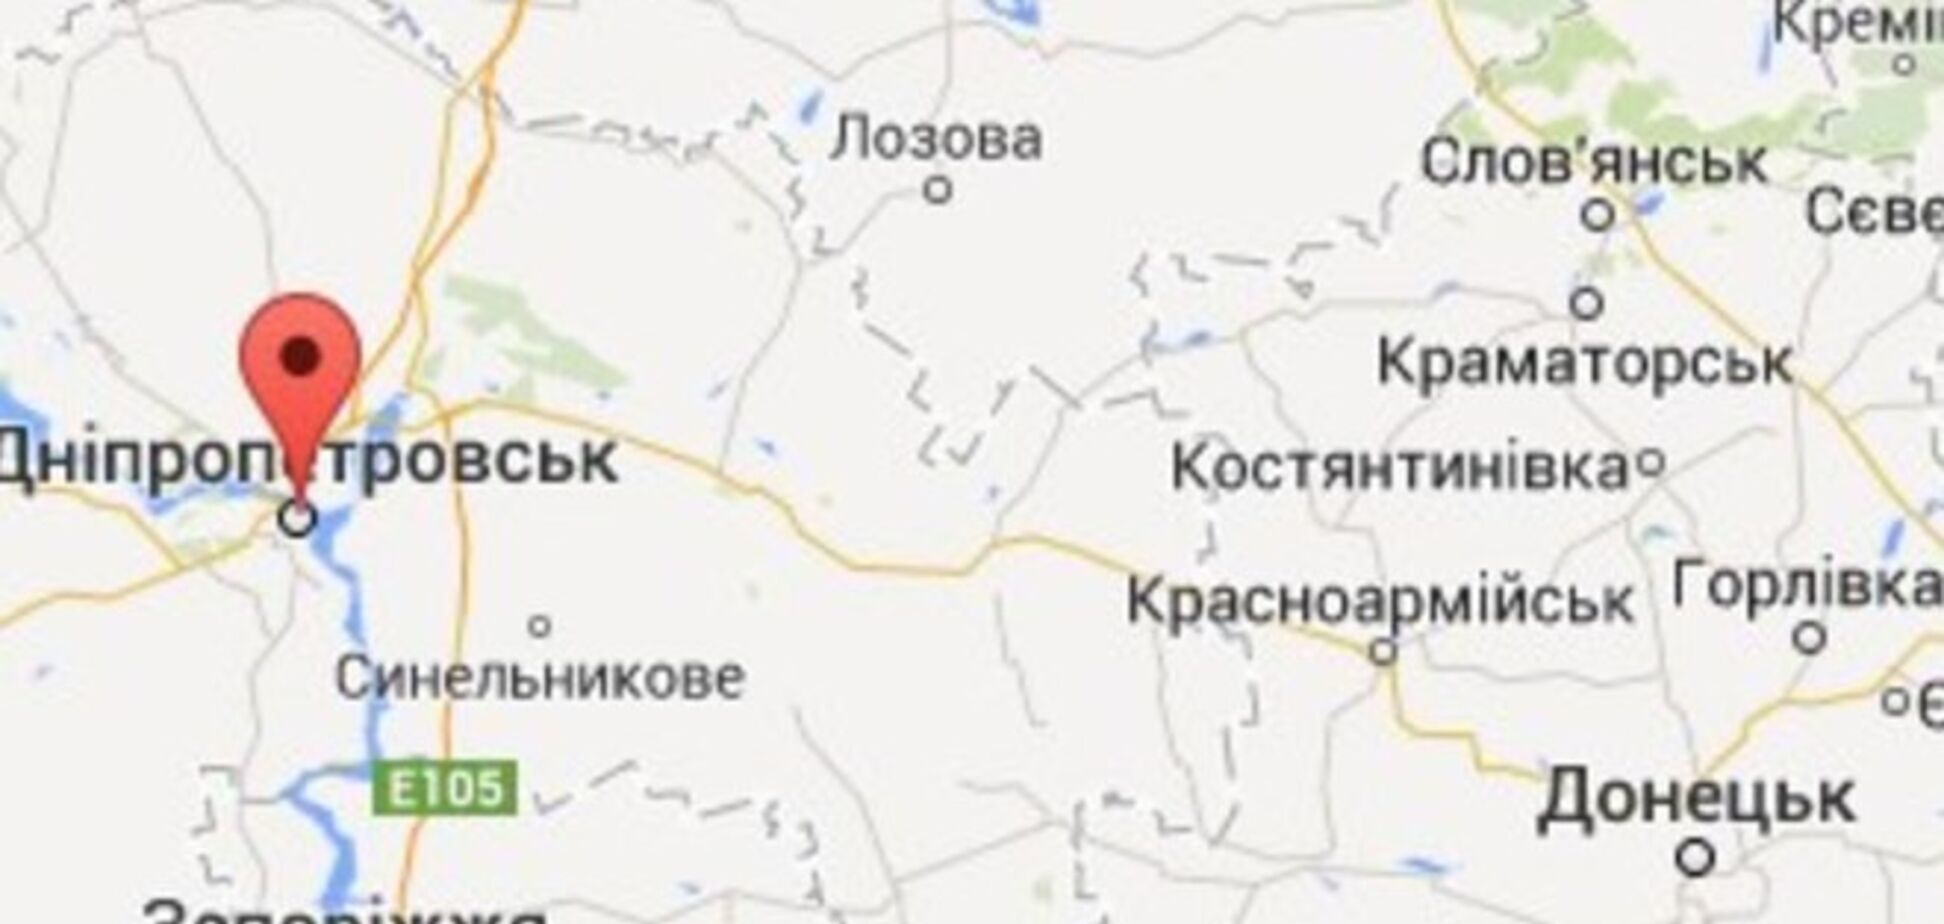 В Днепропетровск из Артемовска доставили четырех погибших бойцов: обнародованы фамилии